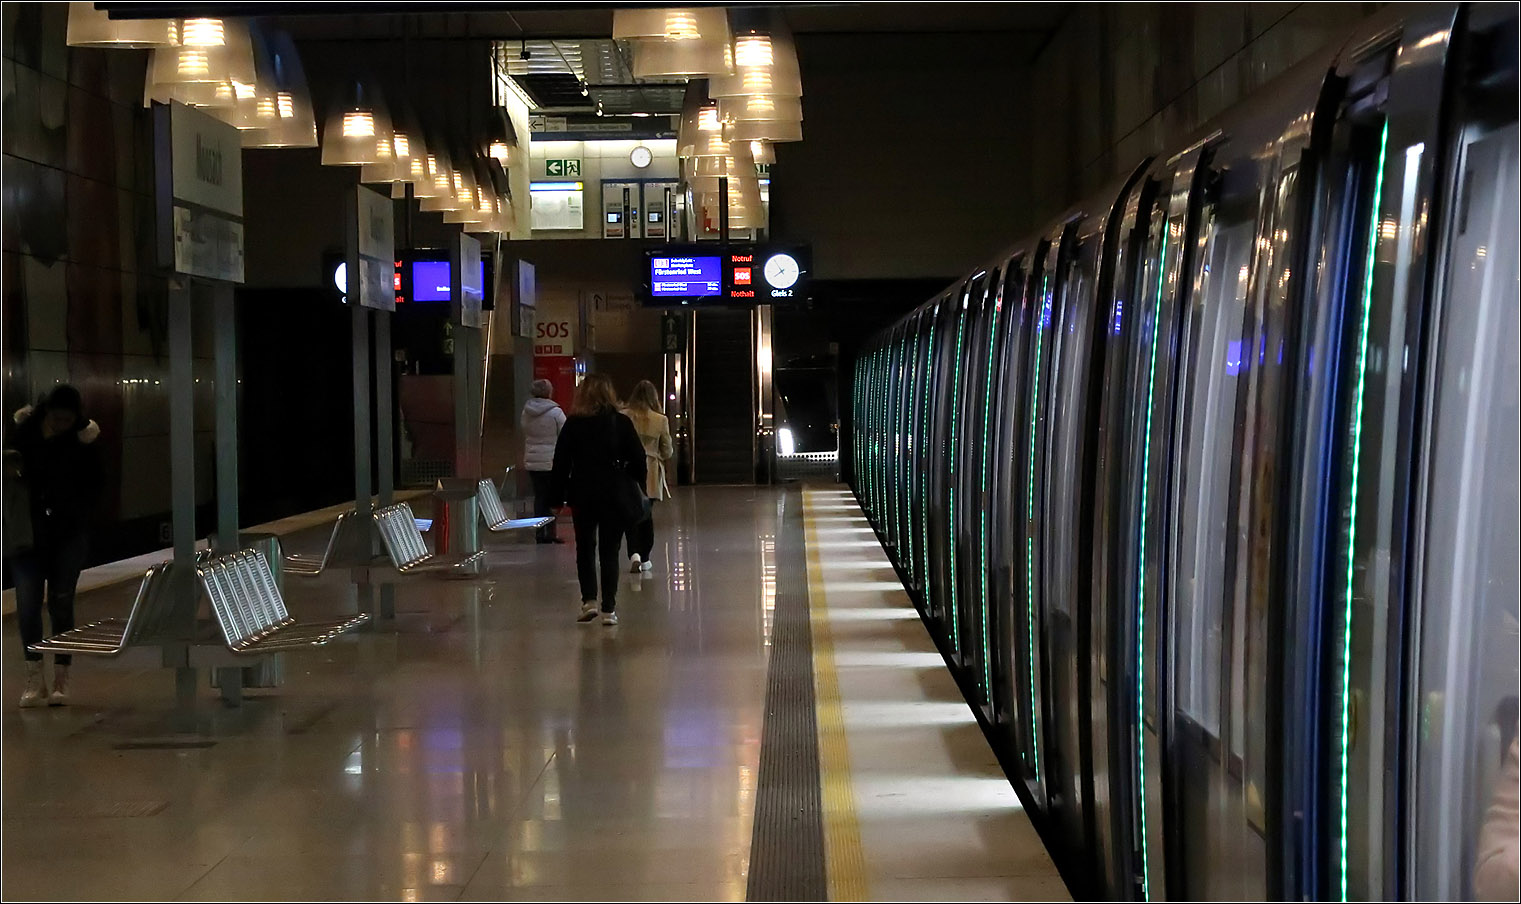 Bei Grün einsteigen - 

Das Lichtbänder an den Türflügeln eines Münchener C2-U-Bahnzuges leuchtet grün und lädt zum Einsteigen ein.
Aufgenommen im Endbahnhof 'Moosach' der Linie U1.

09.11.2022 (M)

